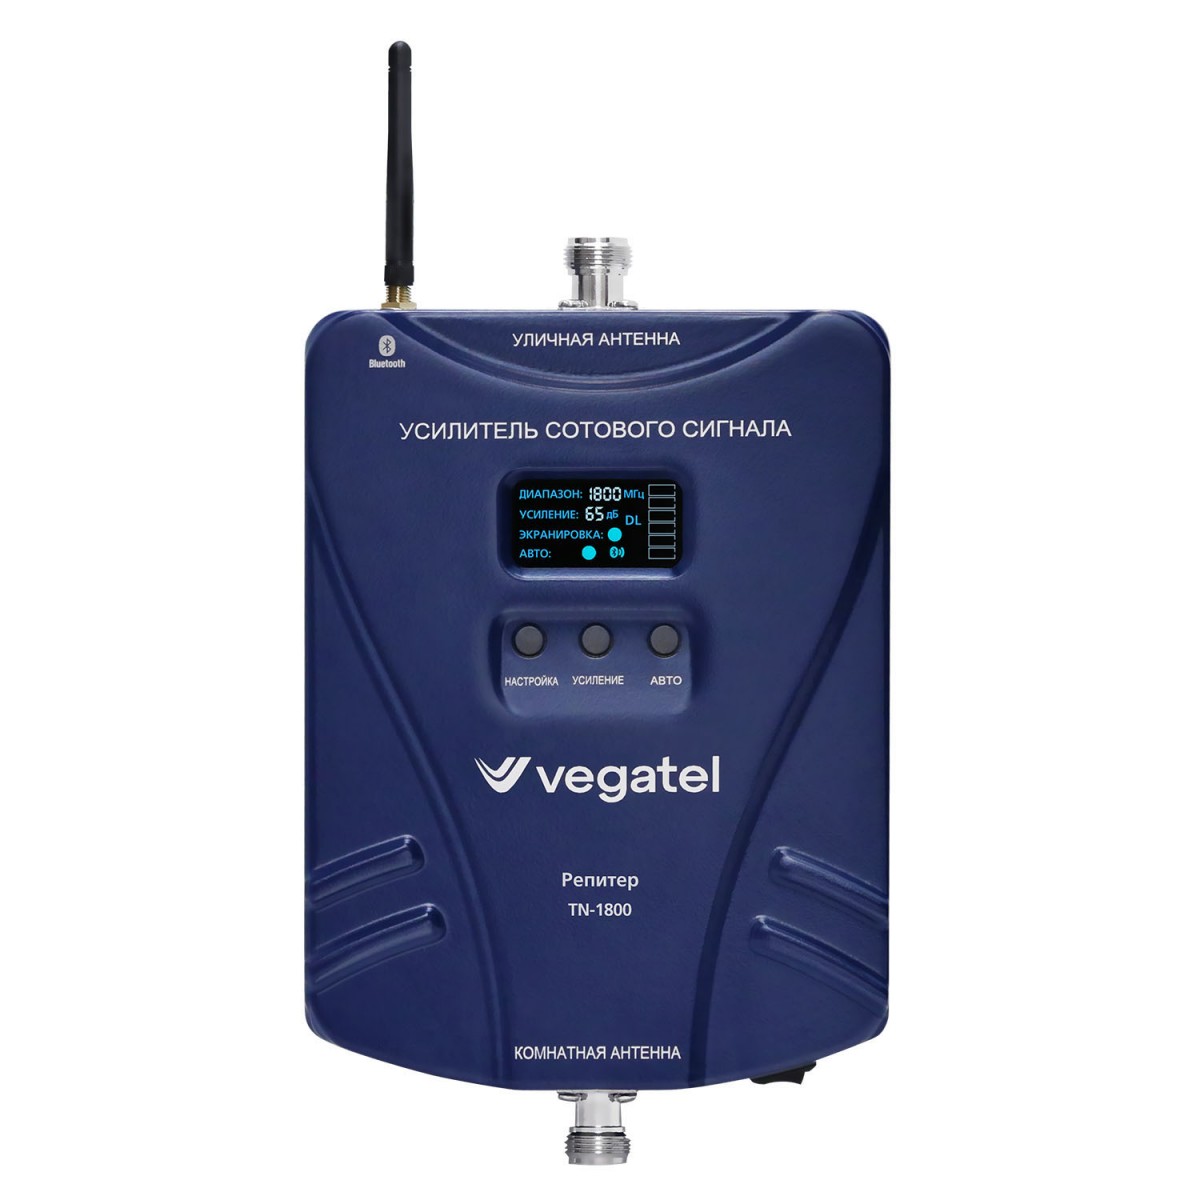 Детальное изображение товара "Комплект усиления сотовой связи Vegatel TN-1800 (14Y)" из каталога оборудования Антенна76